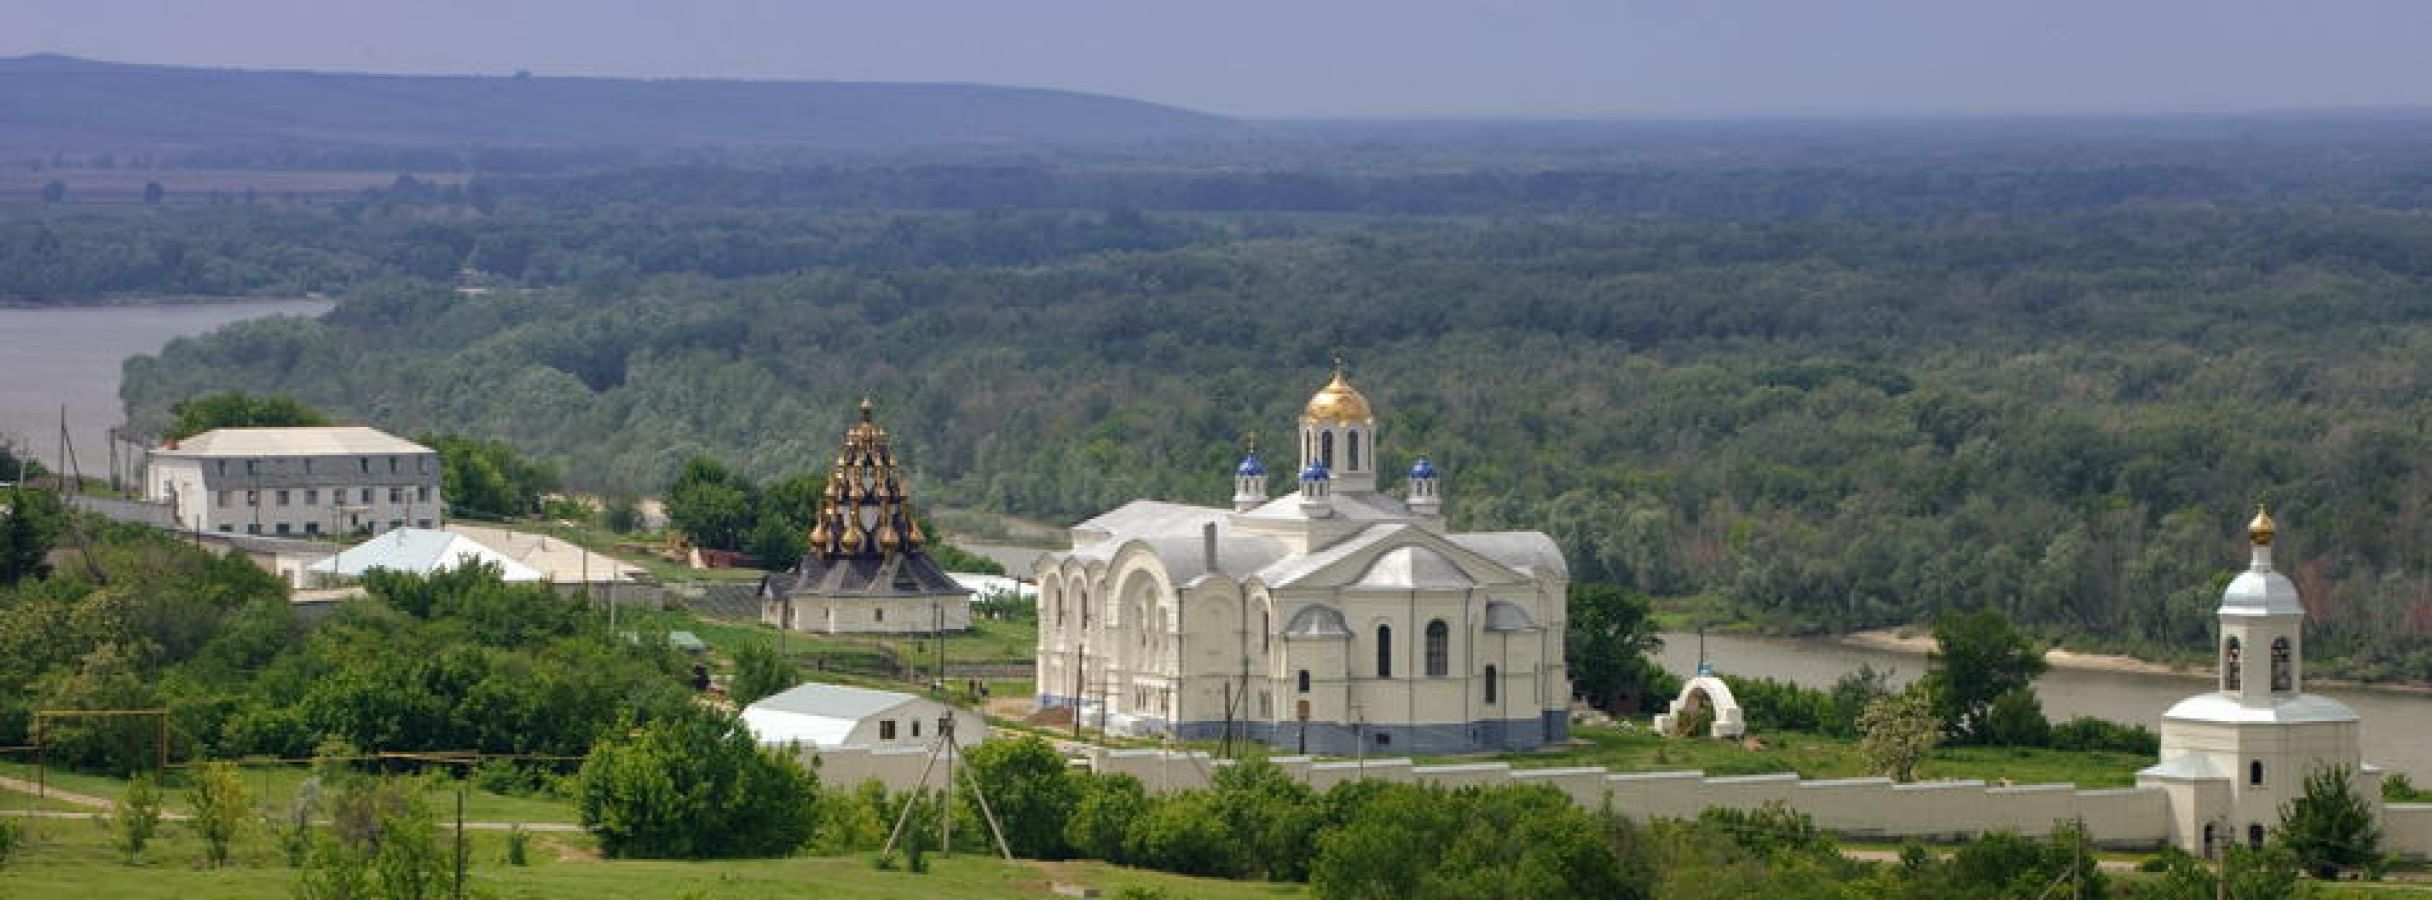 Усть-Медведицкий Спасо-Преображенский монастырь г Серафимович